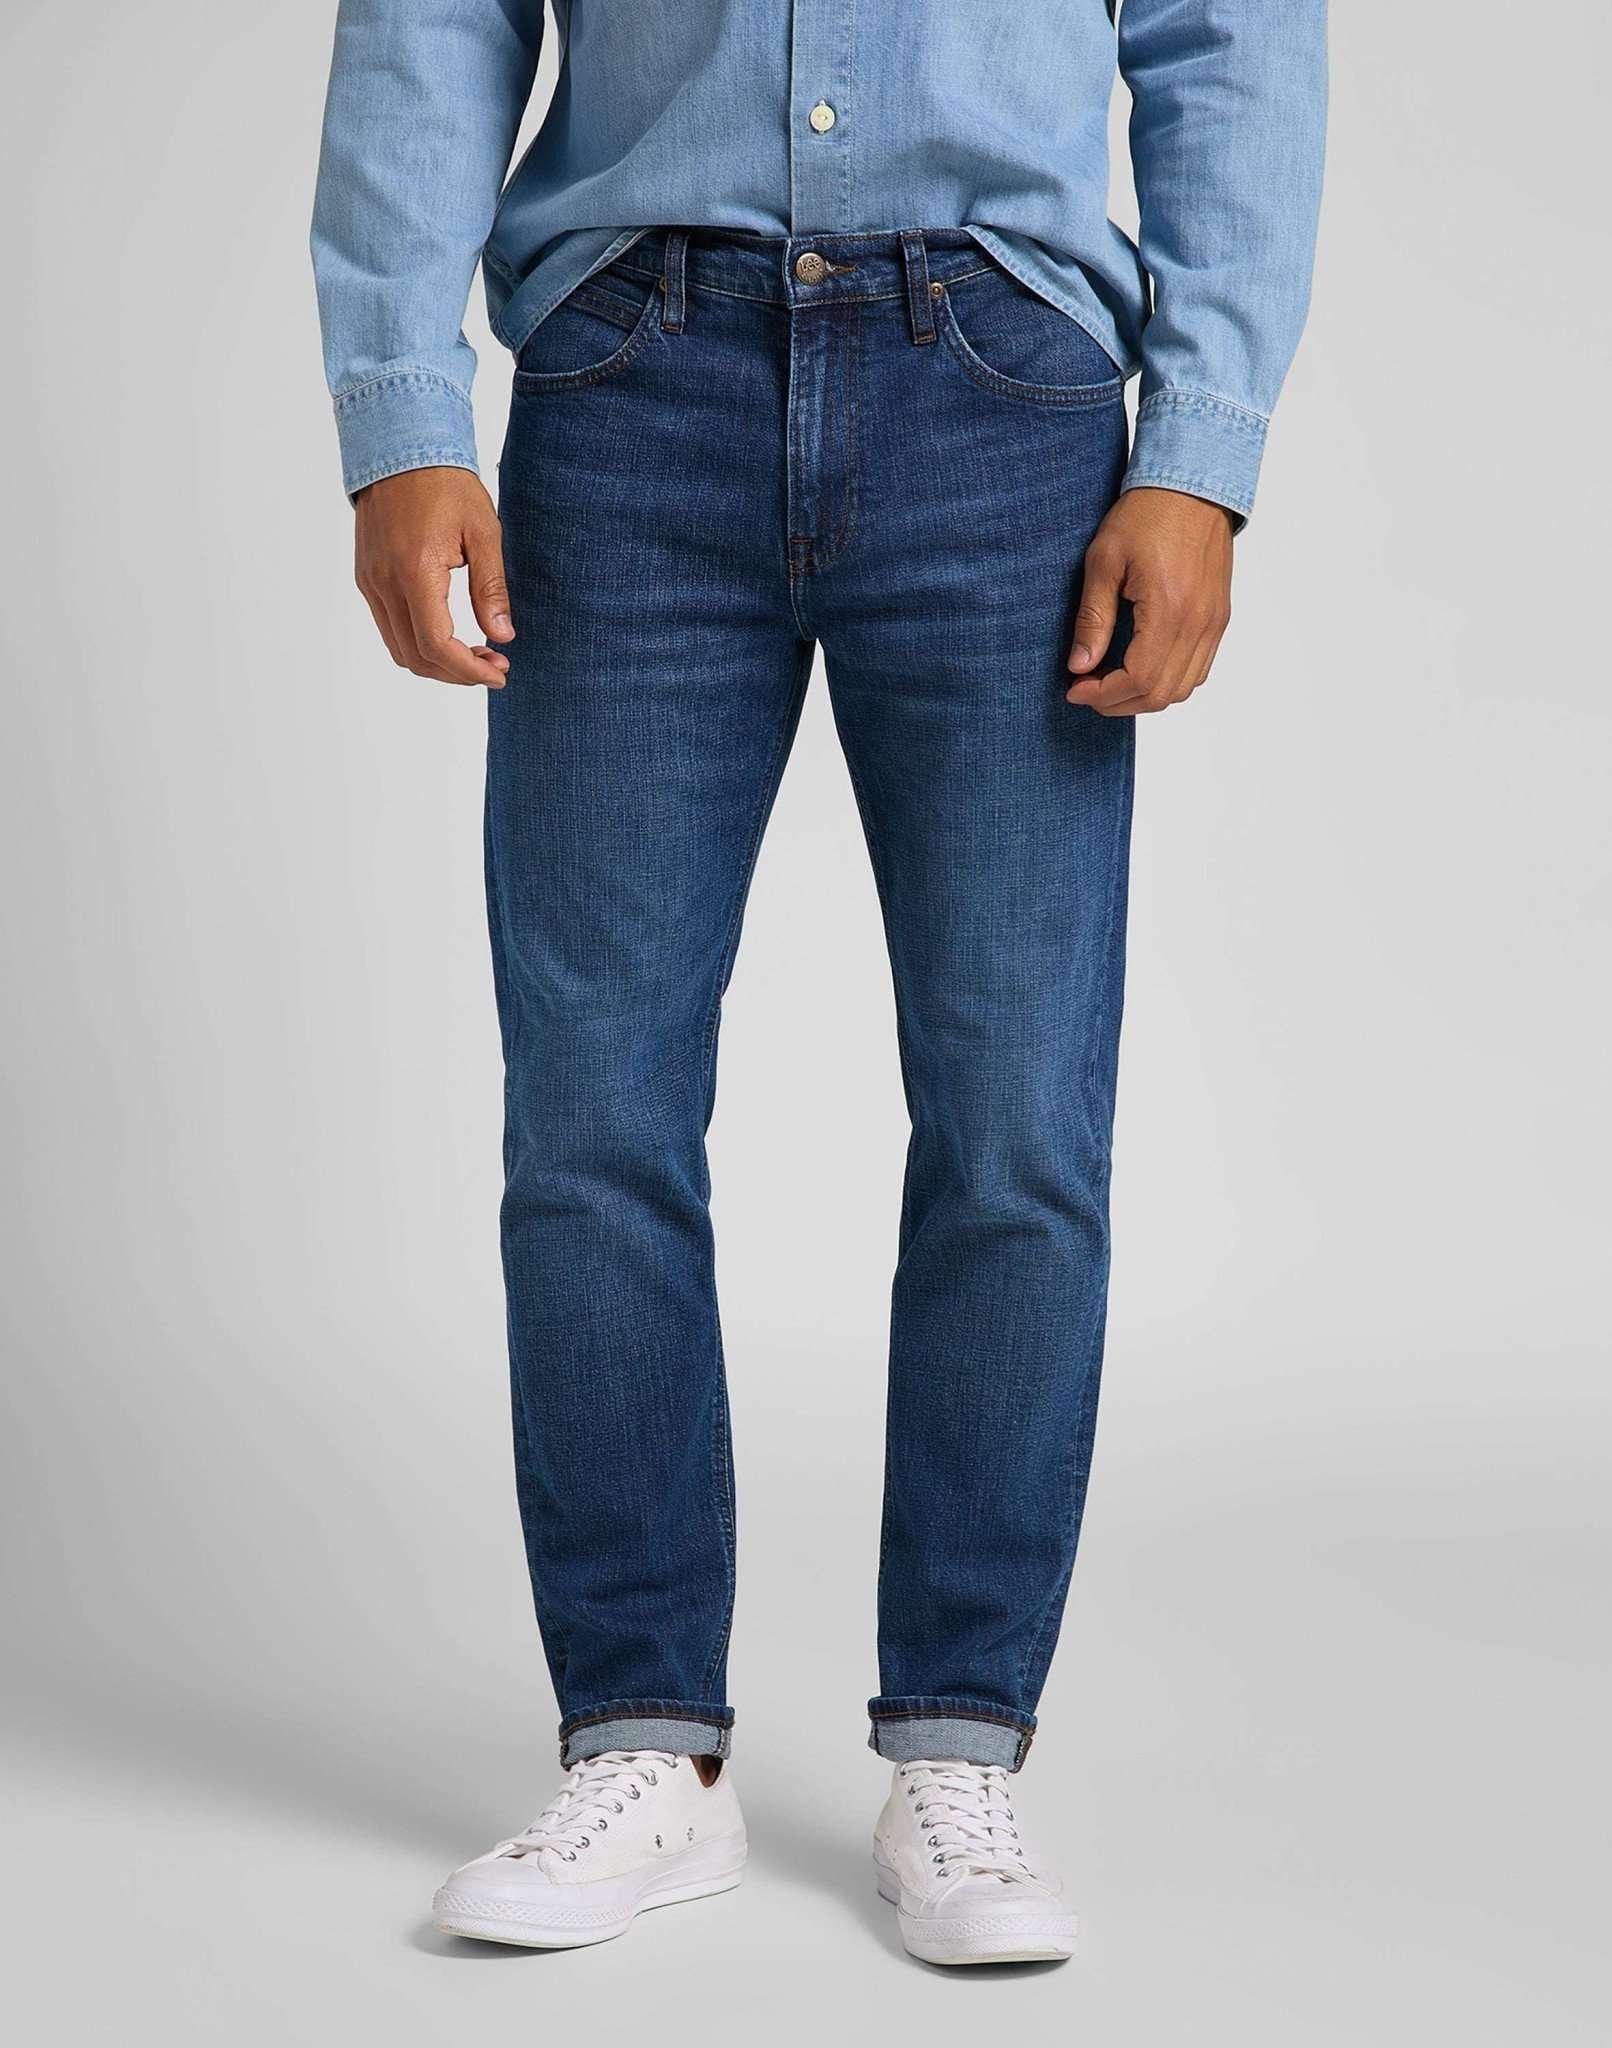 Jeans Straight Leg Austin Herren Blau Denim L30/W38 von Lee